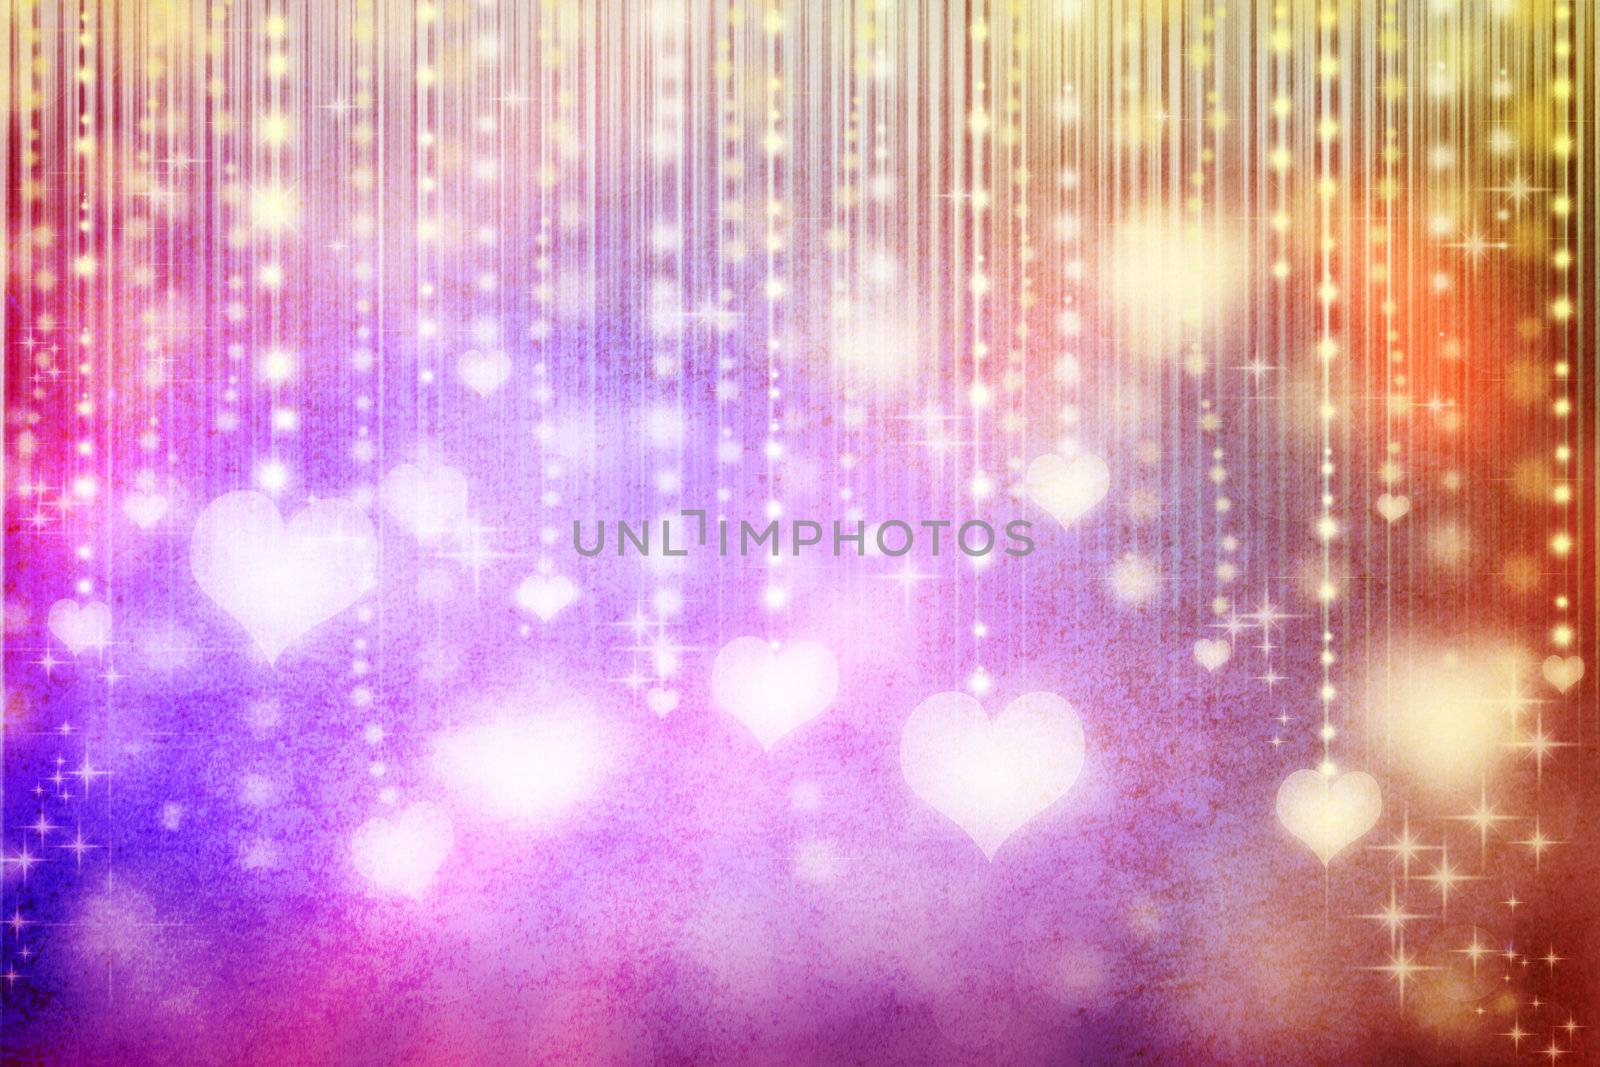 illuminated hearts on colorful grunge background